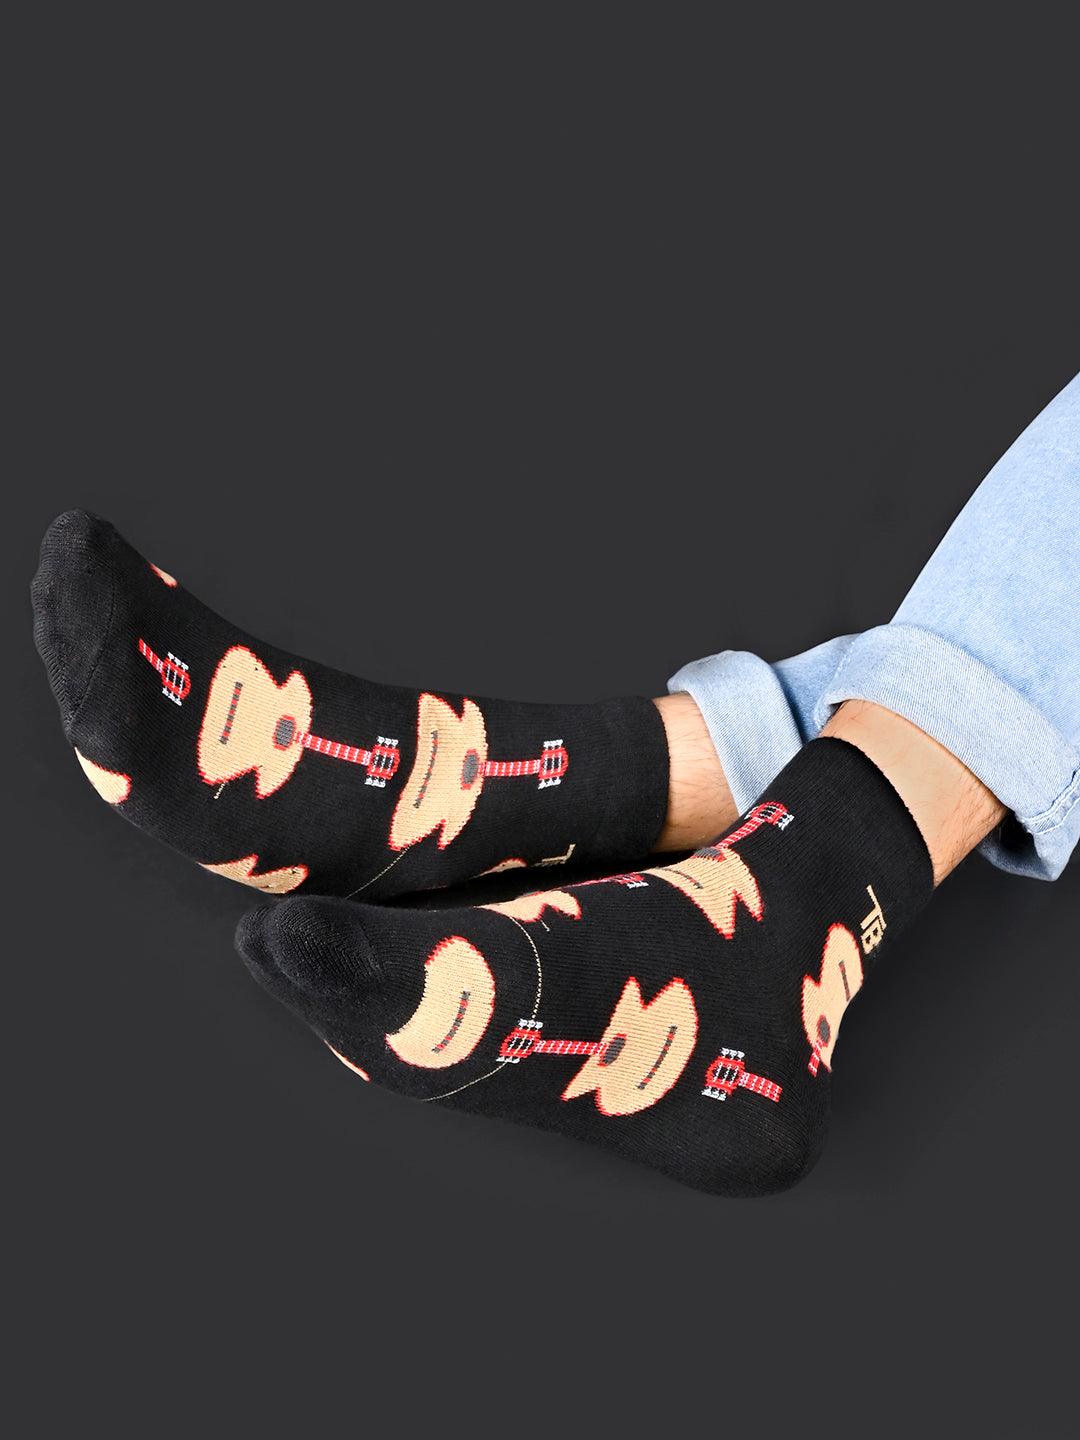 socks for women 